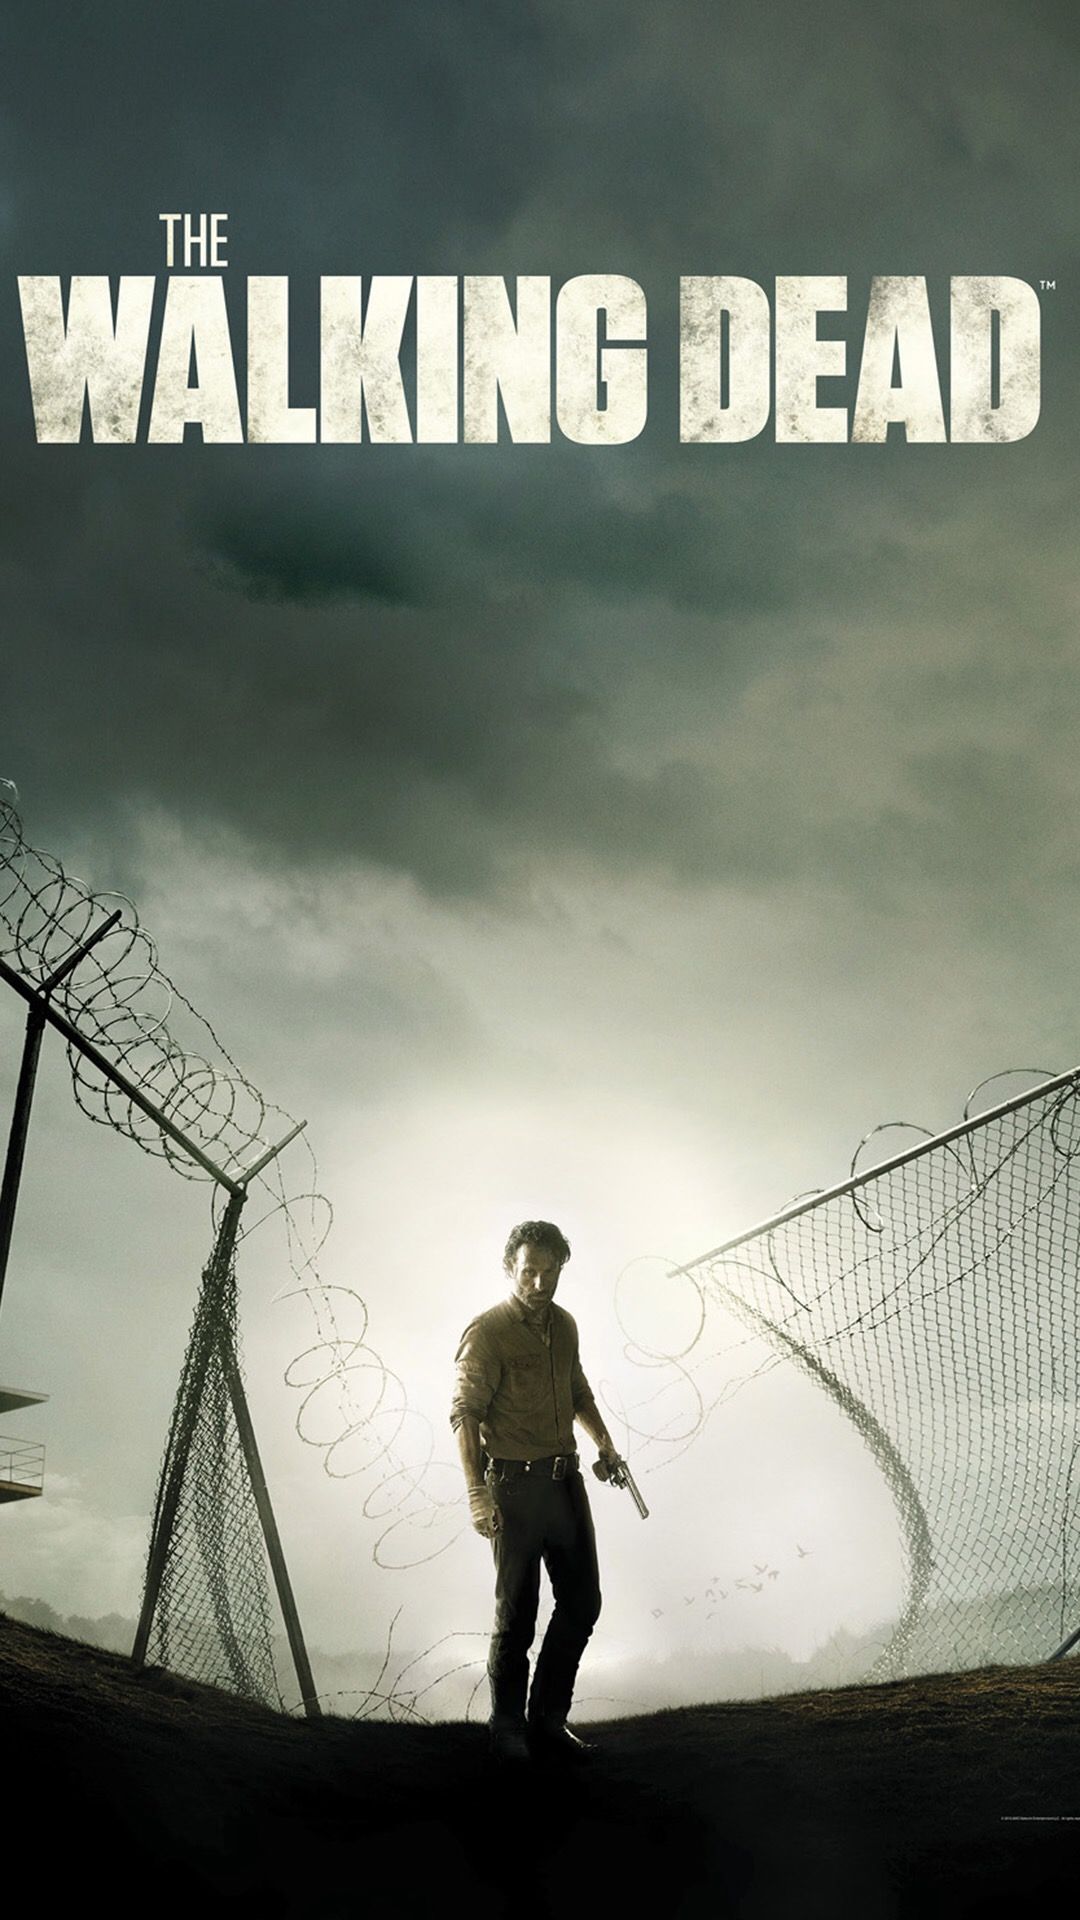 Fondos de pantalla de la semana: The Walking Dead